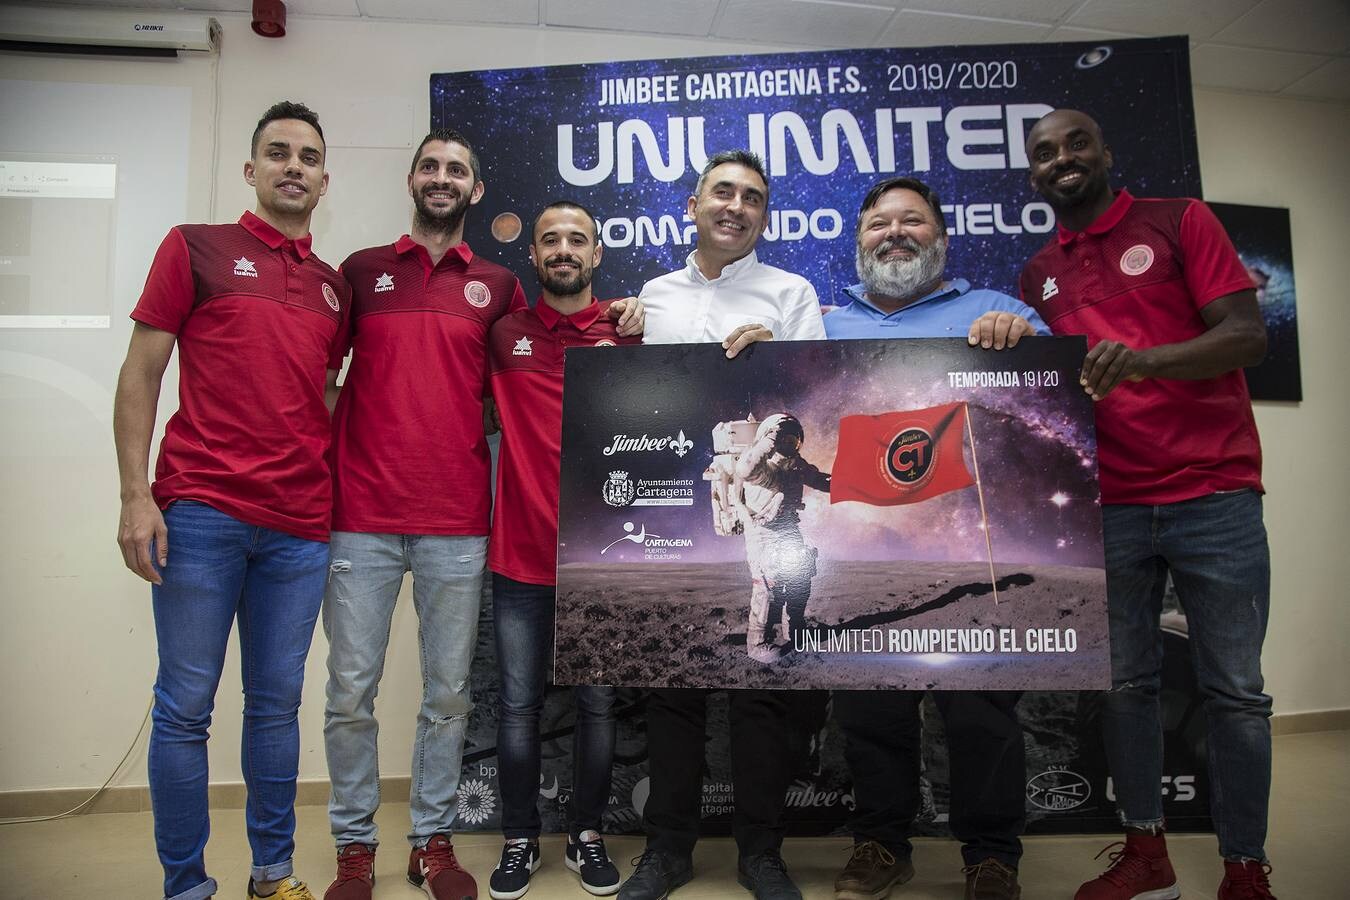 El Jimbee Cartagena 19-20 dio anoche un nuevo salto hacia adelante con la presentación de su campaña de abonados, con la que el club quiere recordar y homenajear el 50 aniversario de la llegada del hombre a la luna.